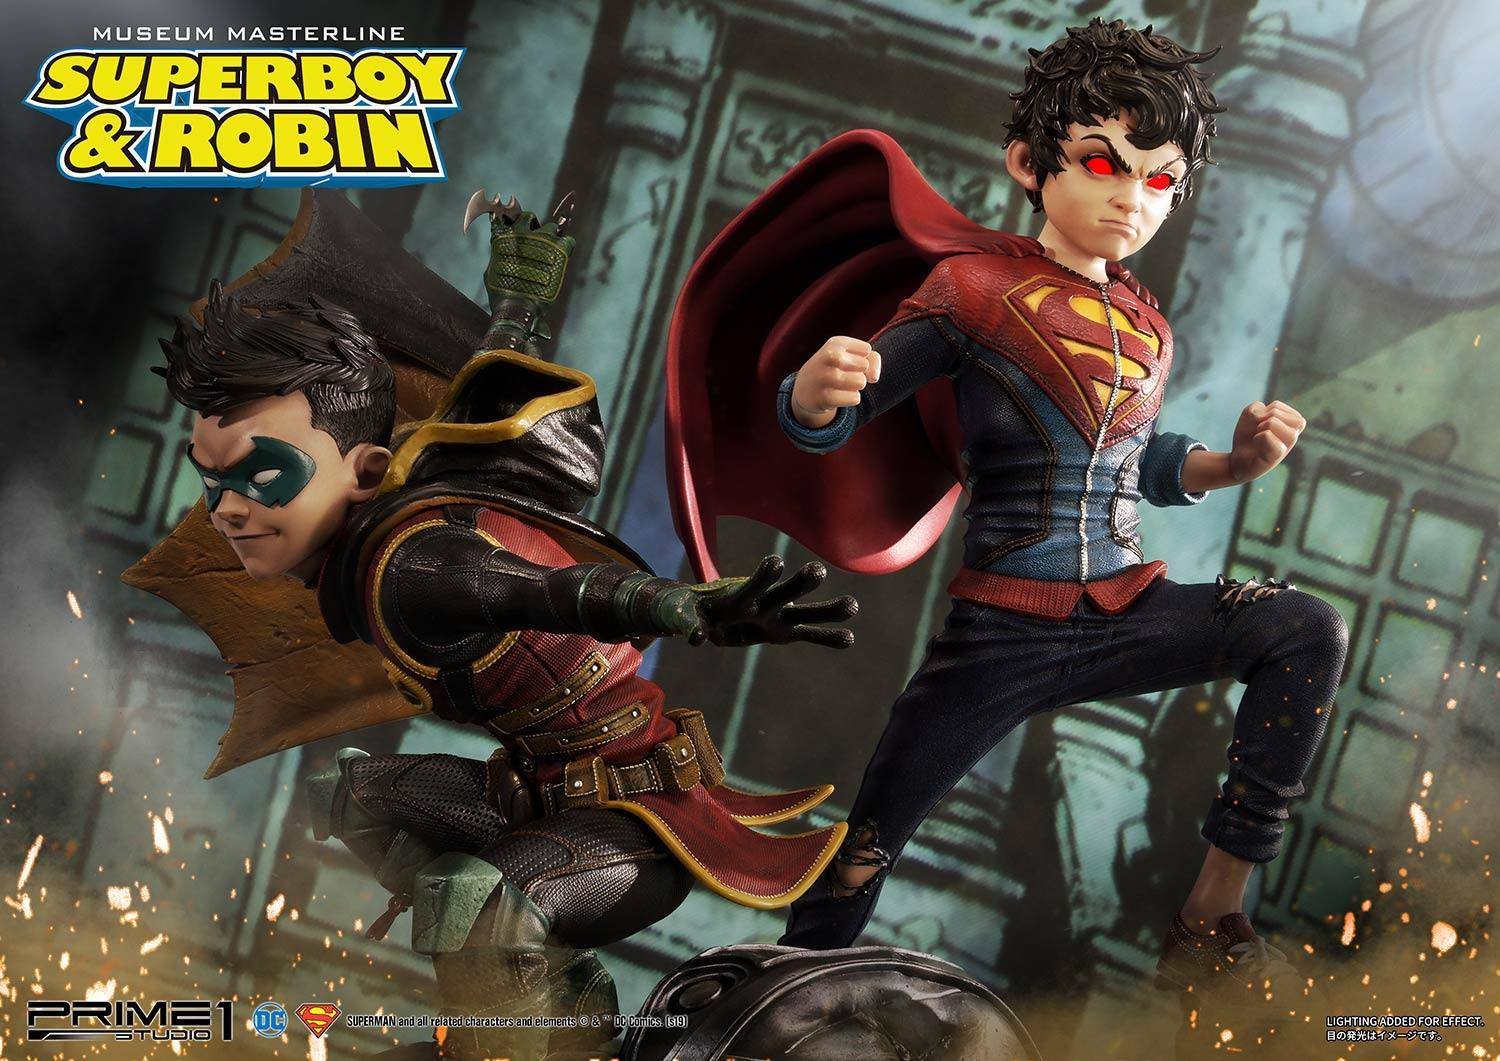 Immagine di Superboy e Robin in scala 1/3 presentati da Prime 1 Studio